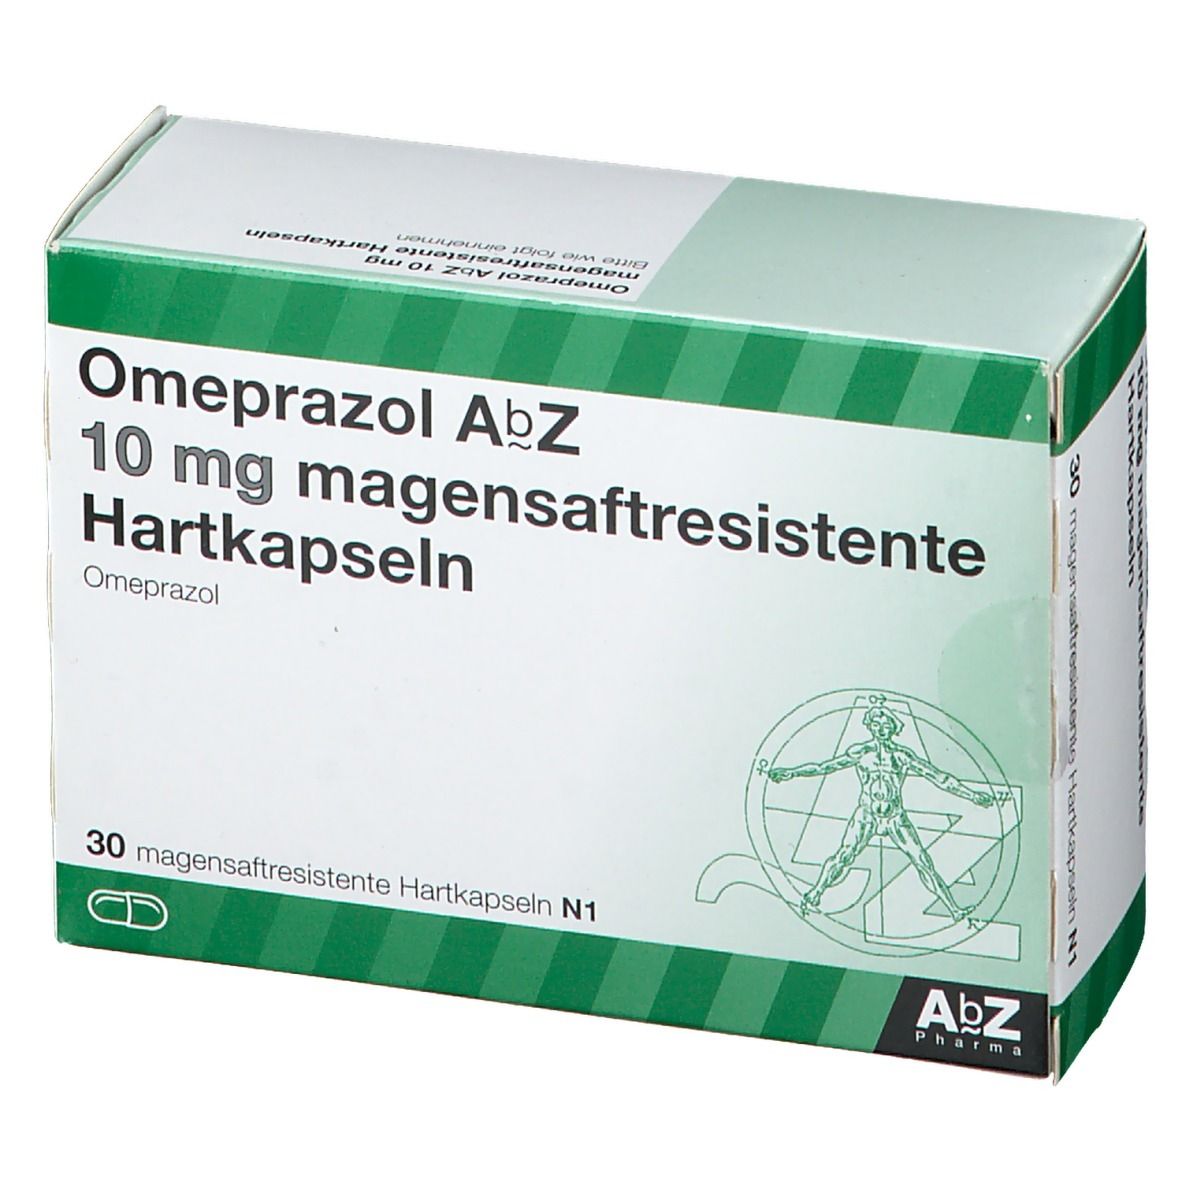 Omeprazol AbZ 10 mg